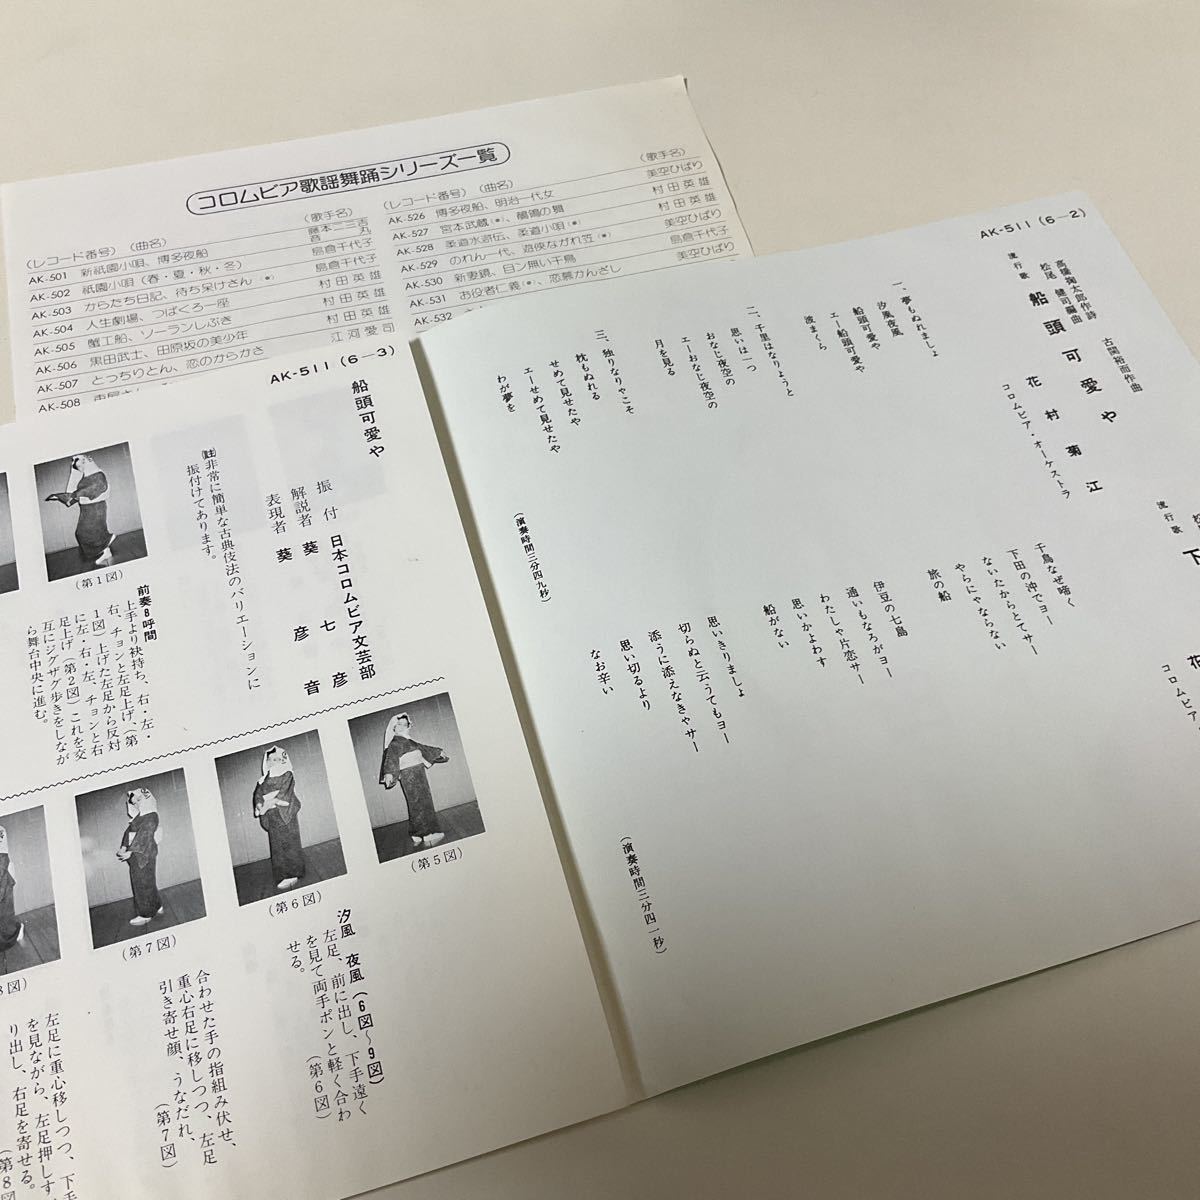 花村菊江 / 船頭可愛や / 下田夜曲 / 7inch レコード / EP / AK-511 /_画像2